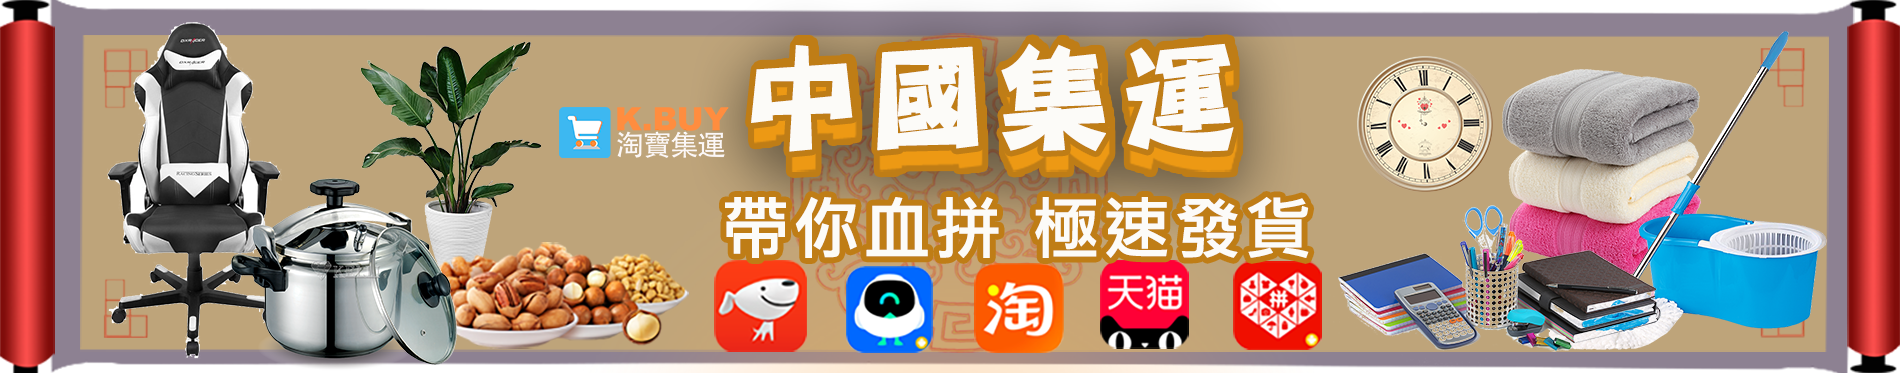 集運-中國banner.png